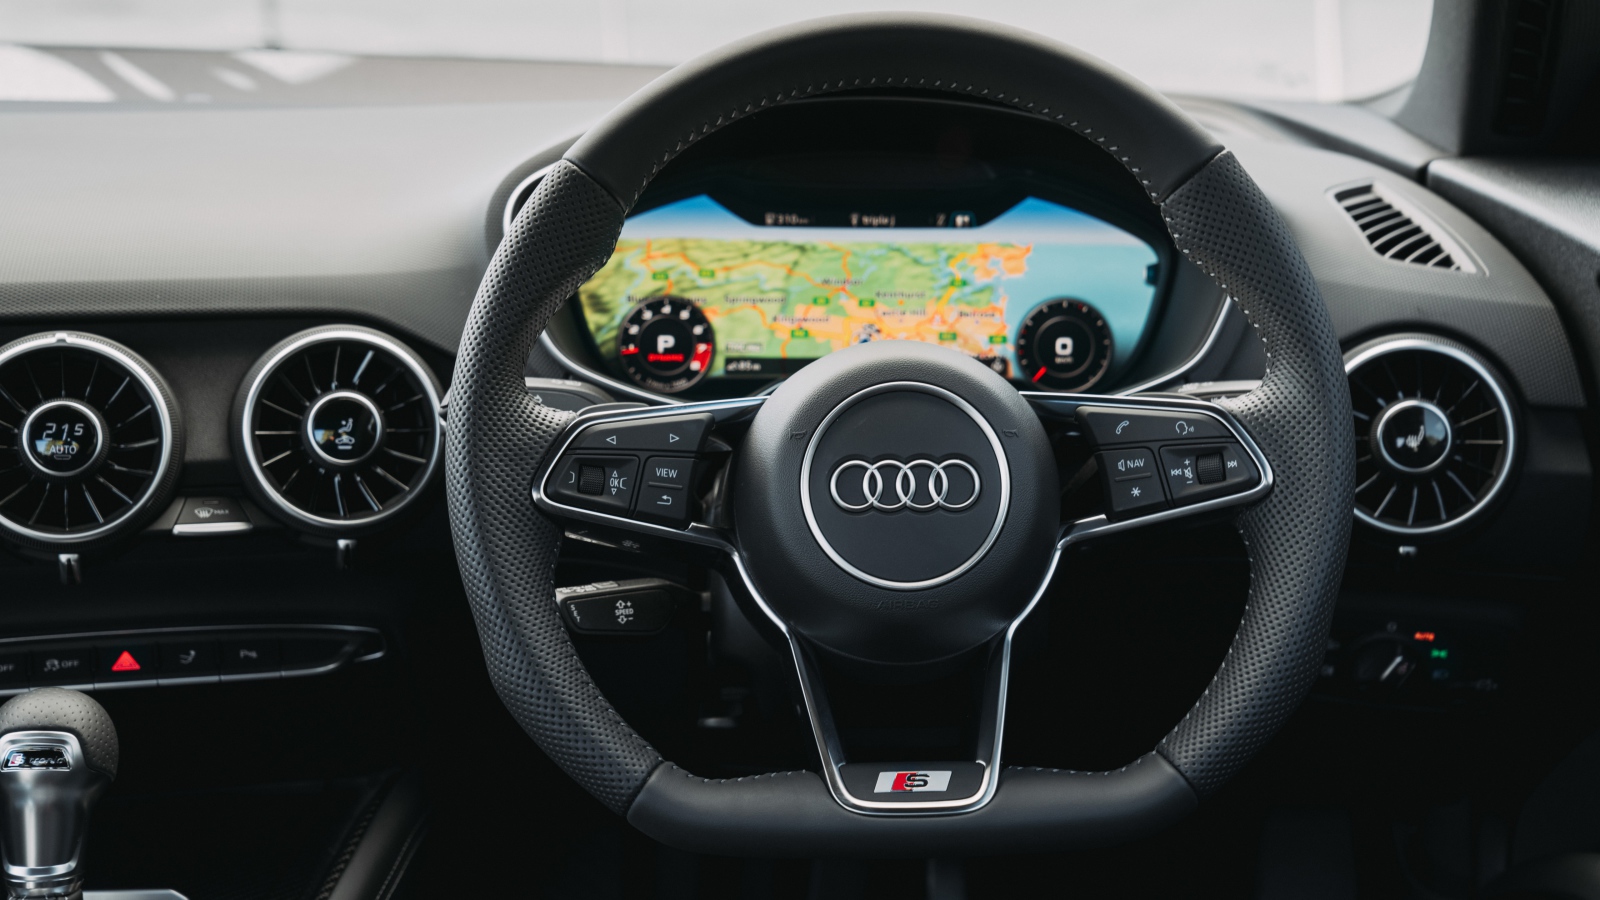 Кожаный руль автомобиля Audi TTS Coupe 2019 года